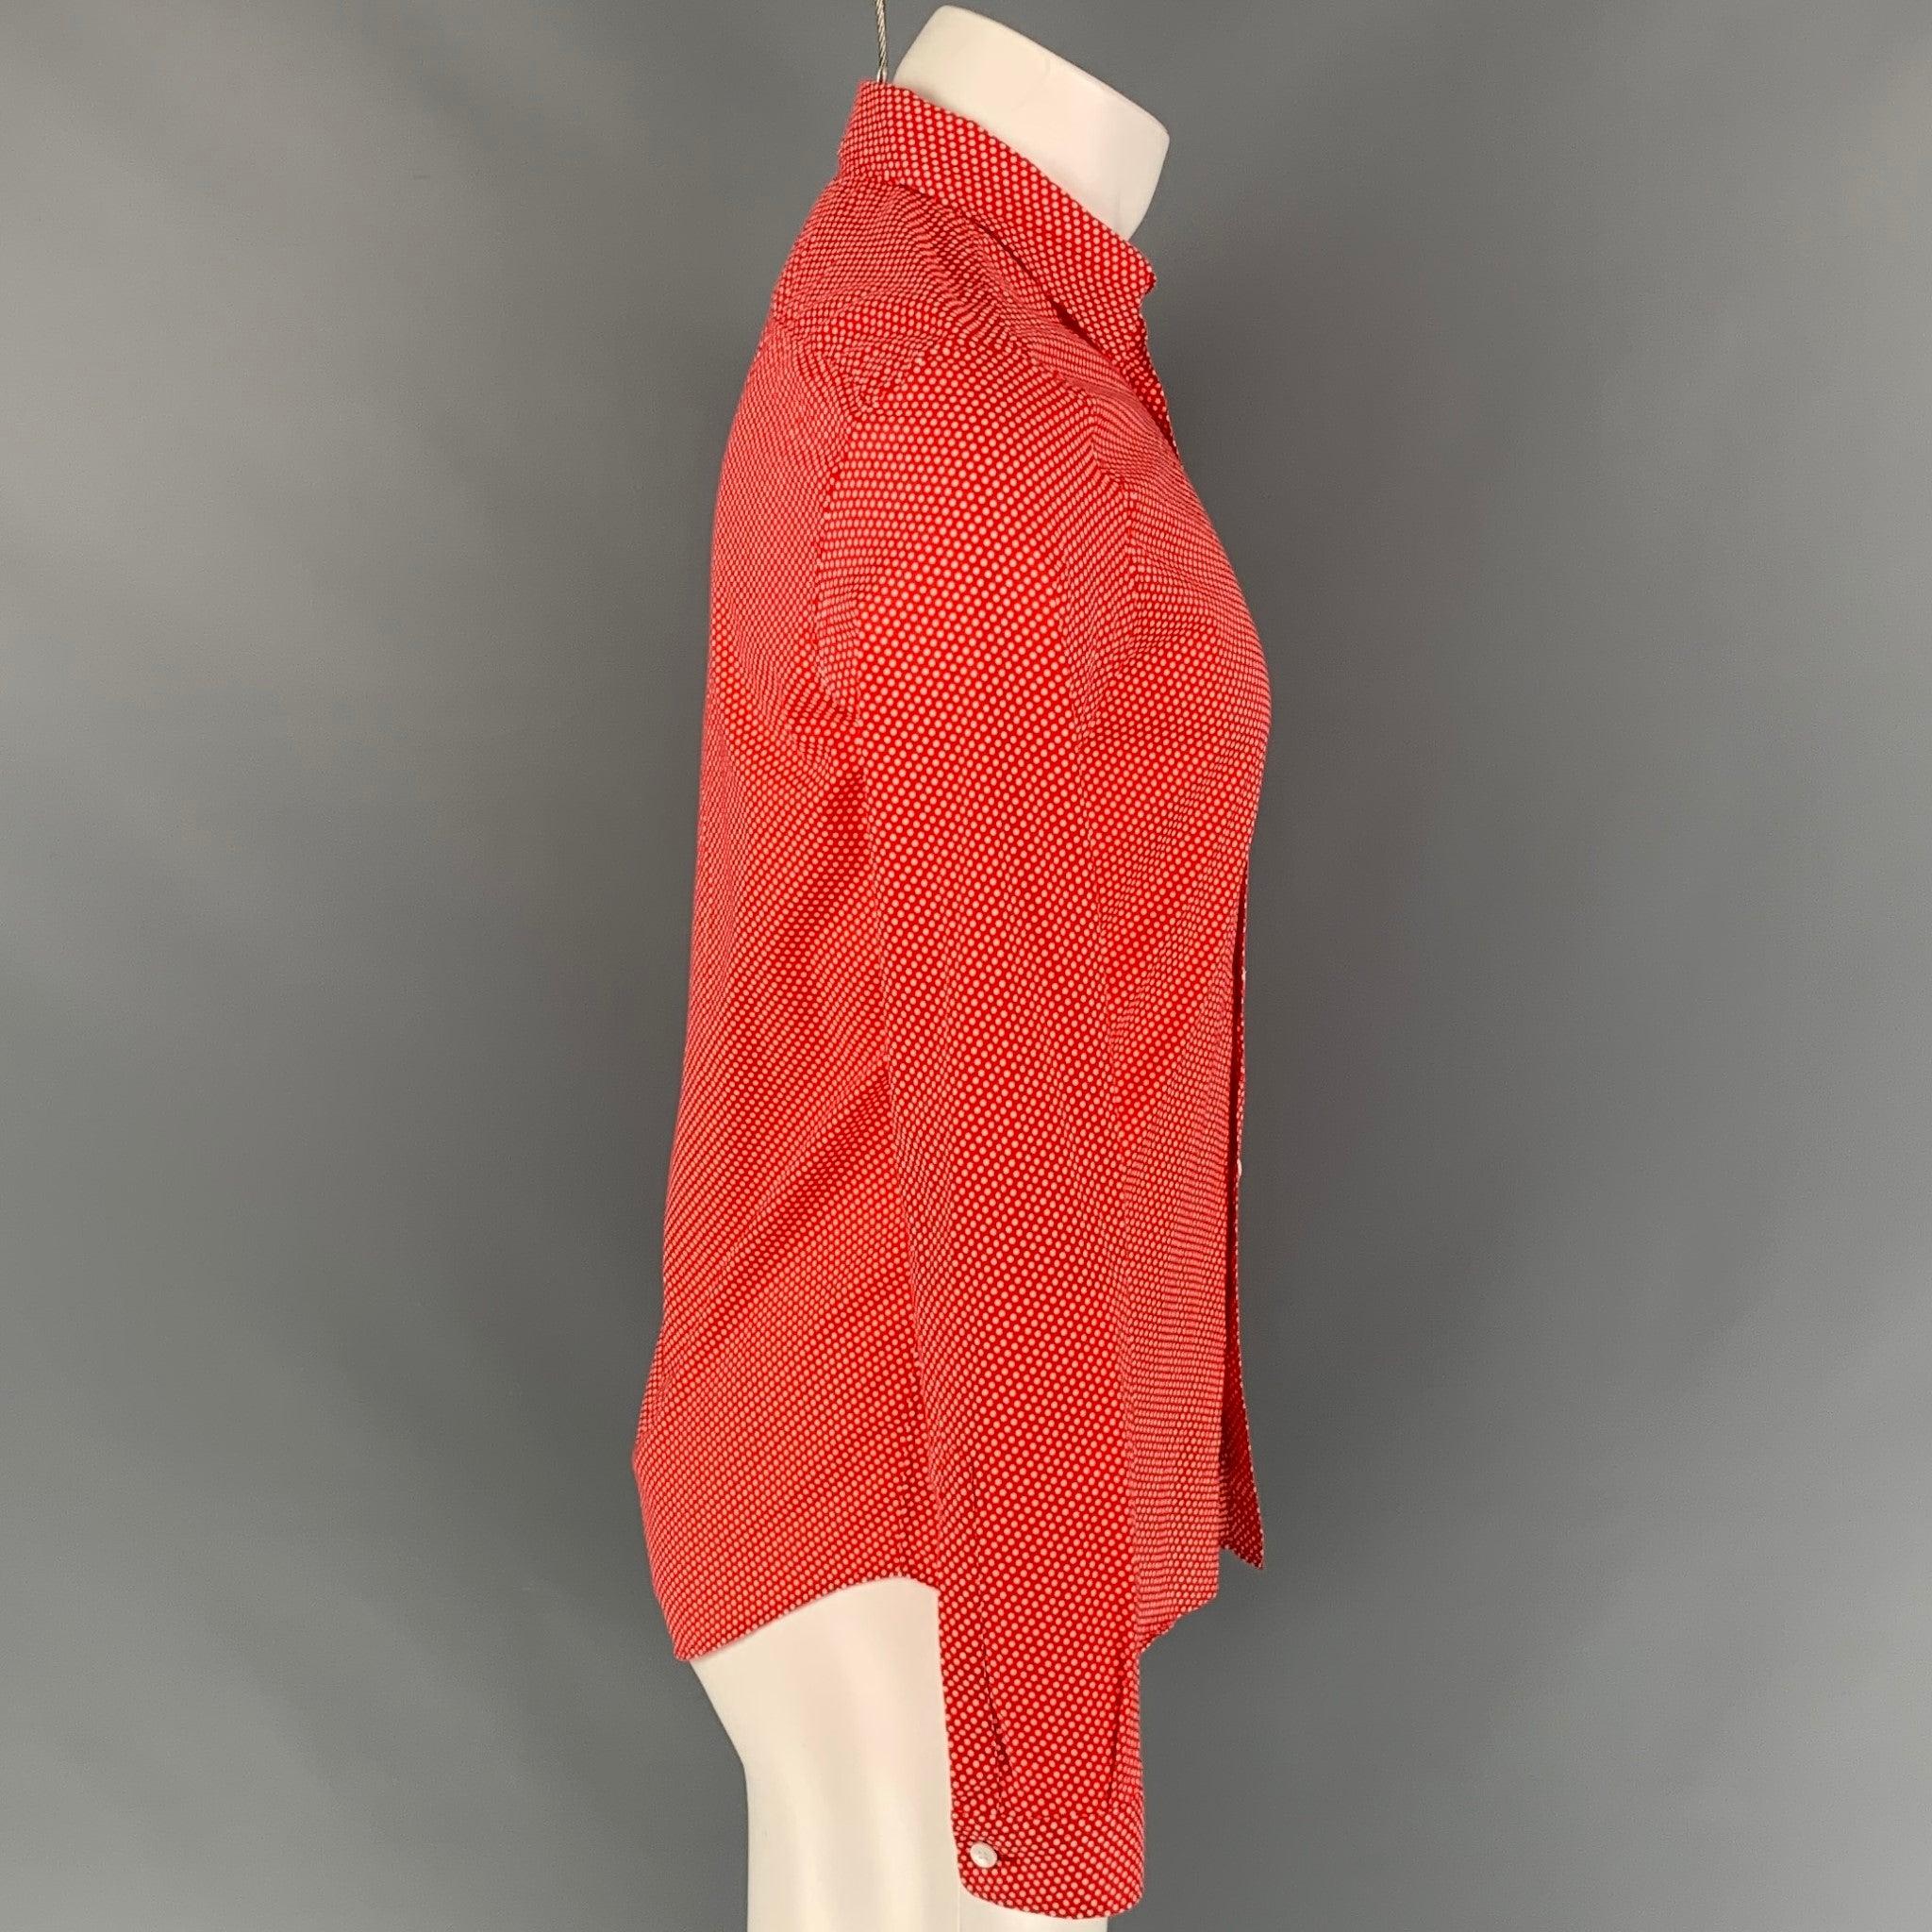 La chemise à manches longues PRORSUM de Burberry se compose d'un coton imprimé de points rouges et blancs, d'un col étalé et d'une fermeture boutonnée. Fabriquées en Italie.
Très bien
Etat d'occasion. 

Marqué :   14.5/37 

Mesures : 
 
Epaule : 17